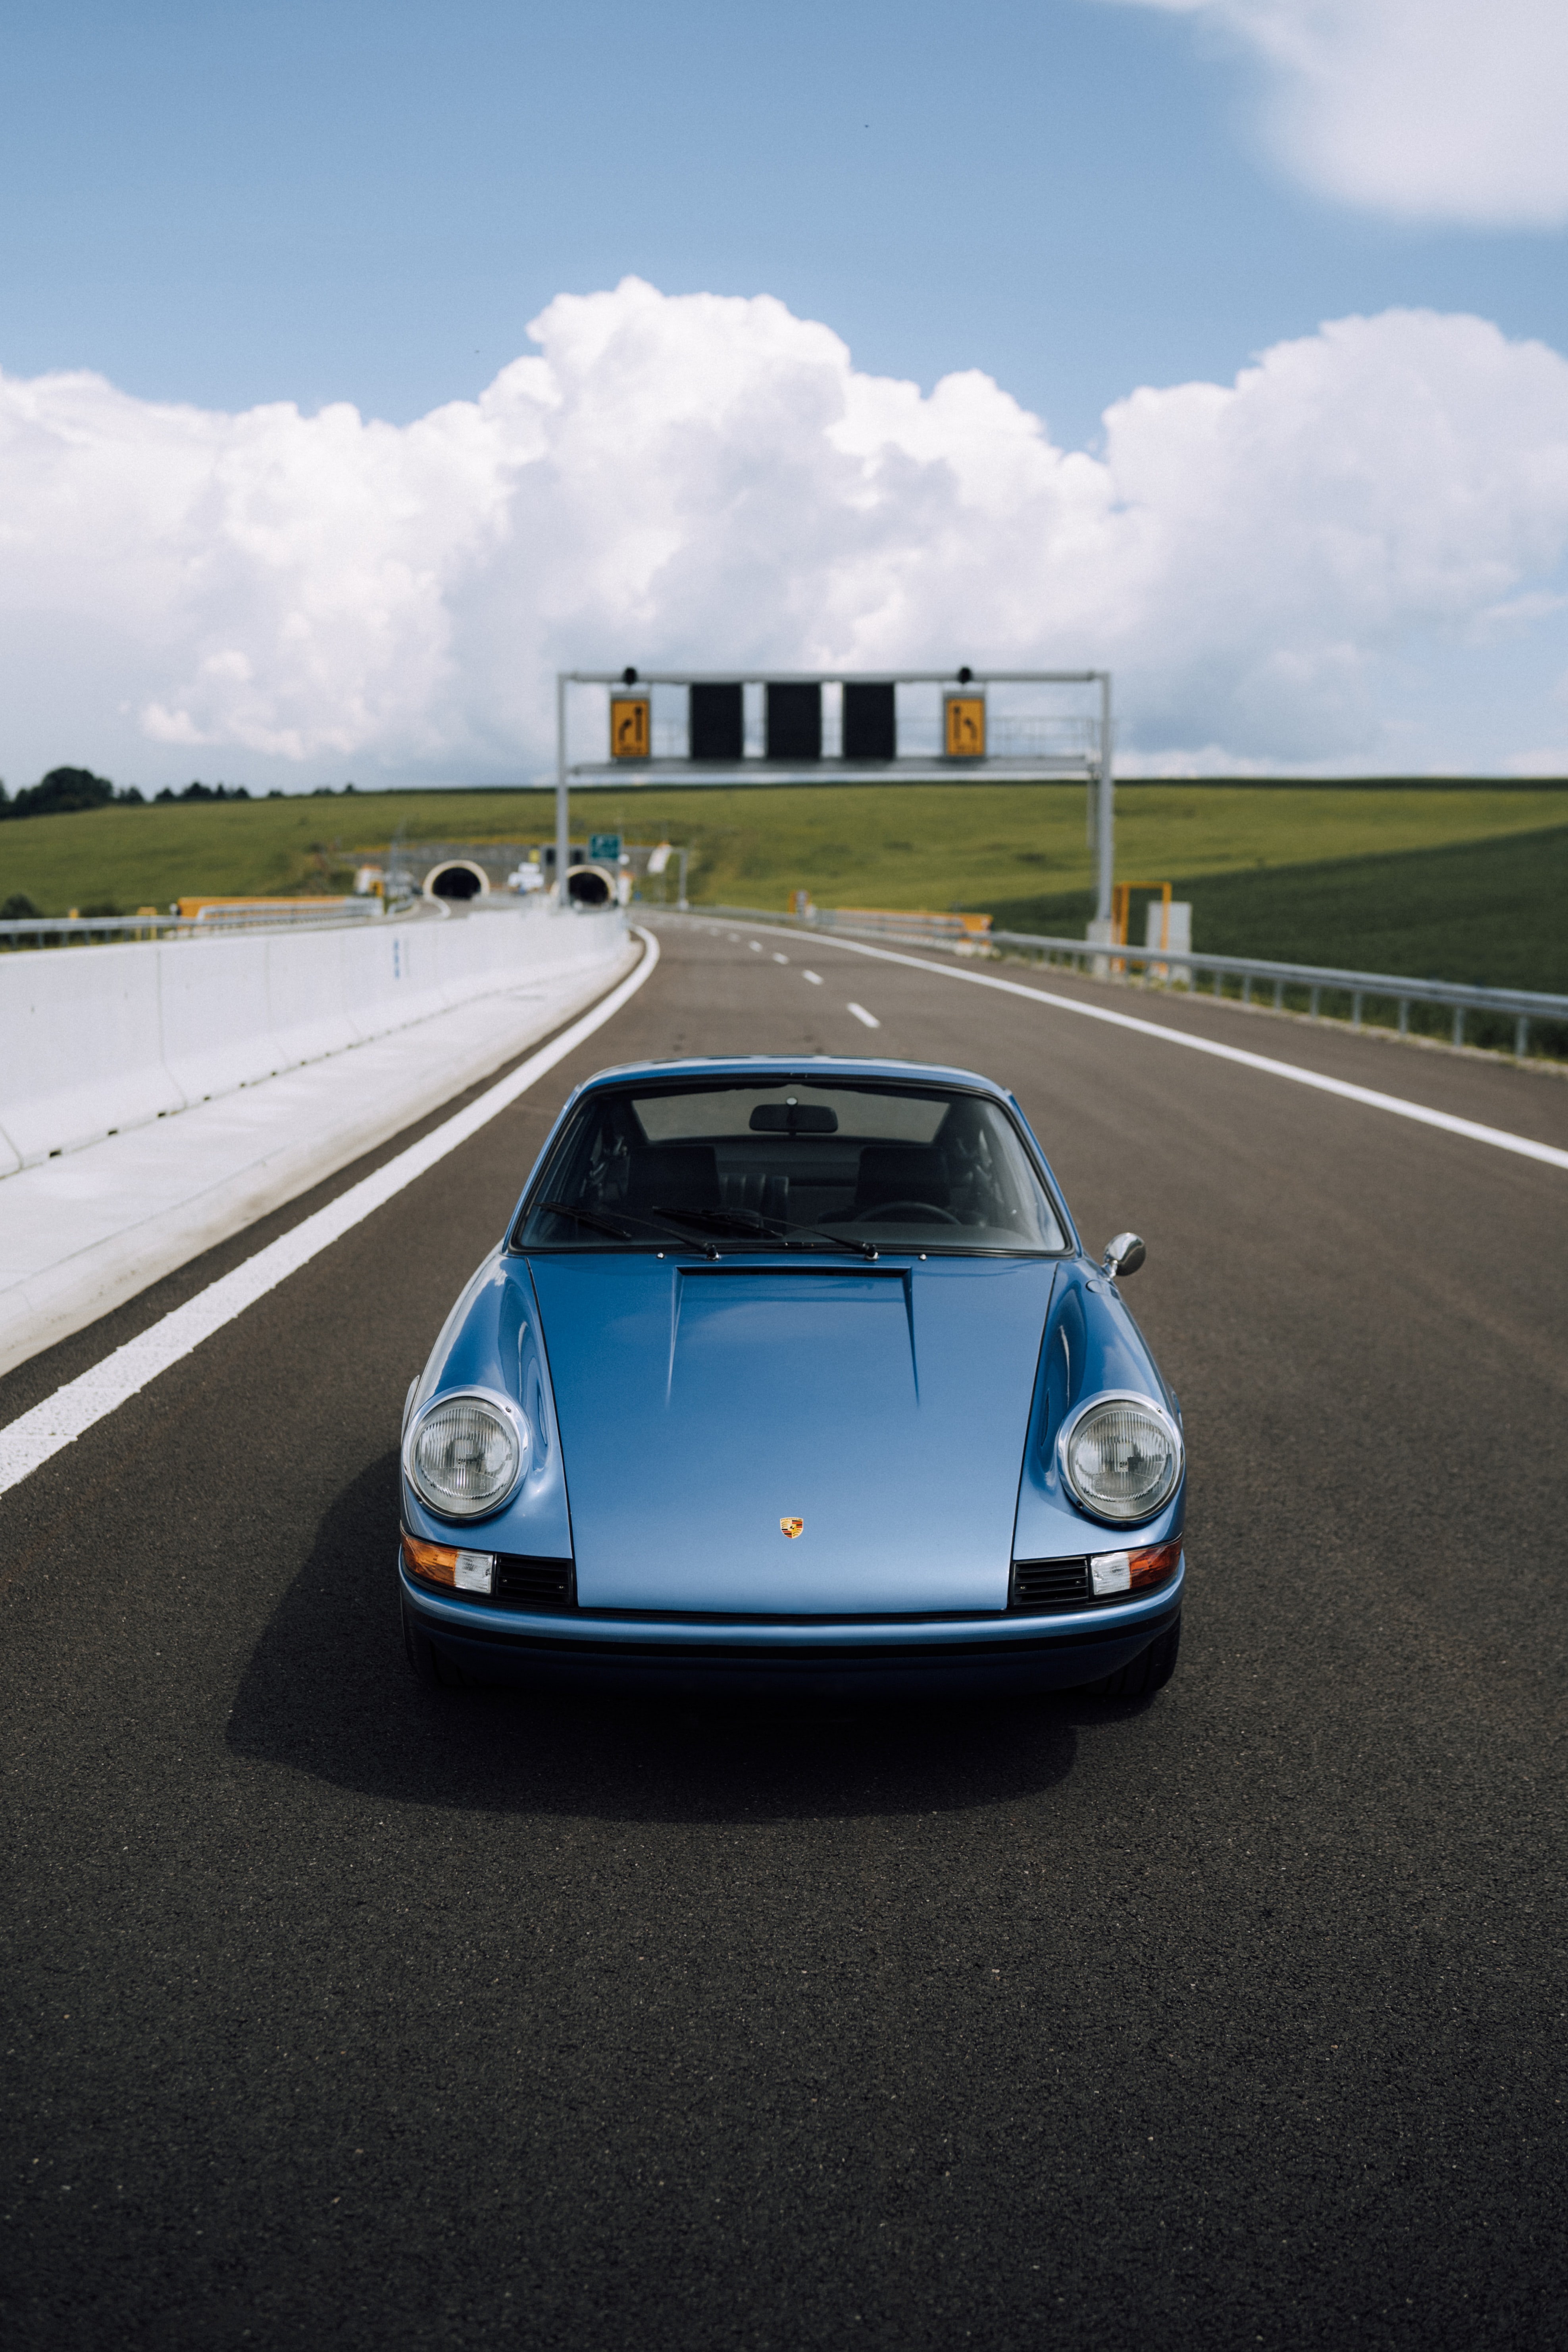 Free download wallpaper Cars, Road, Front View, Car, Porsche, Porsche 911 on your PC desktop